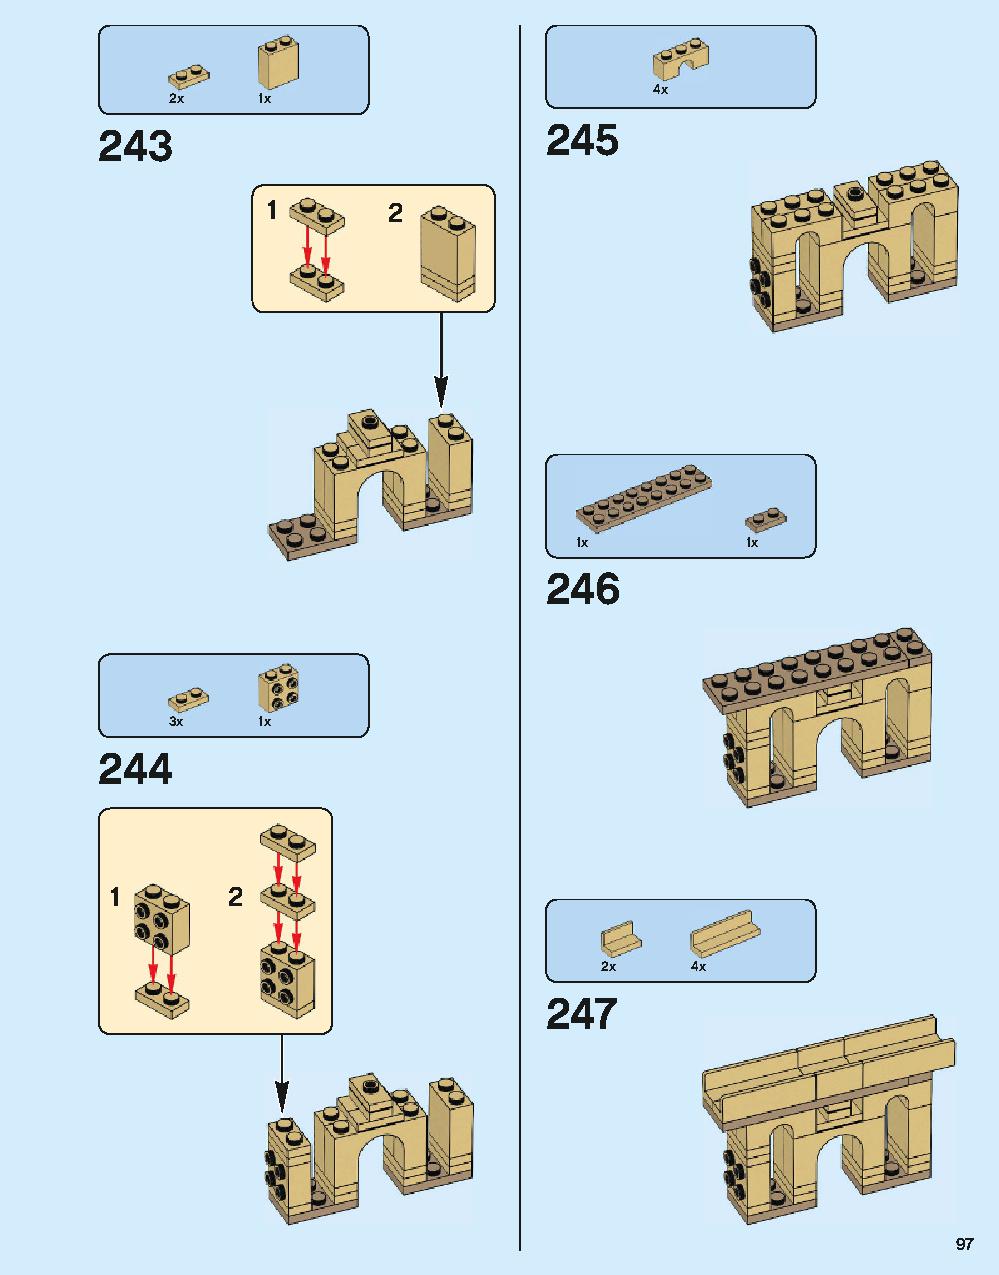 ホグワーツ城 71043 レゴの商品情報 レゴの説明書・組立方法 97 page